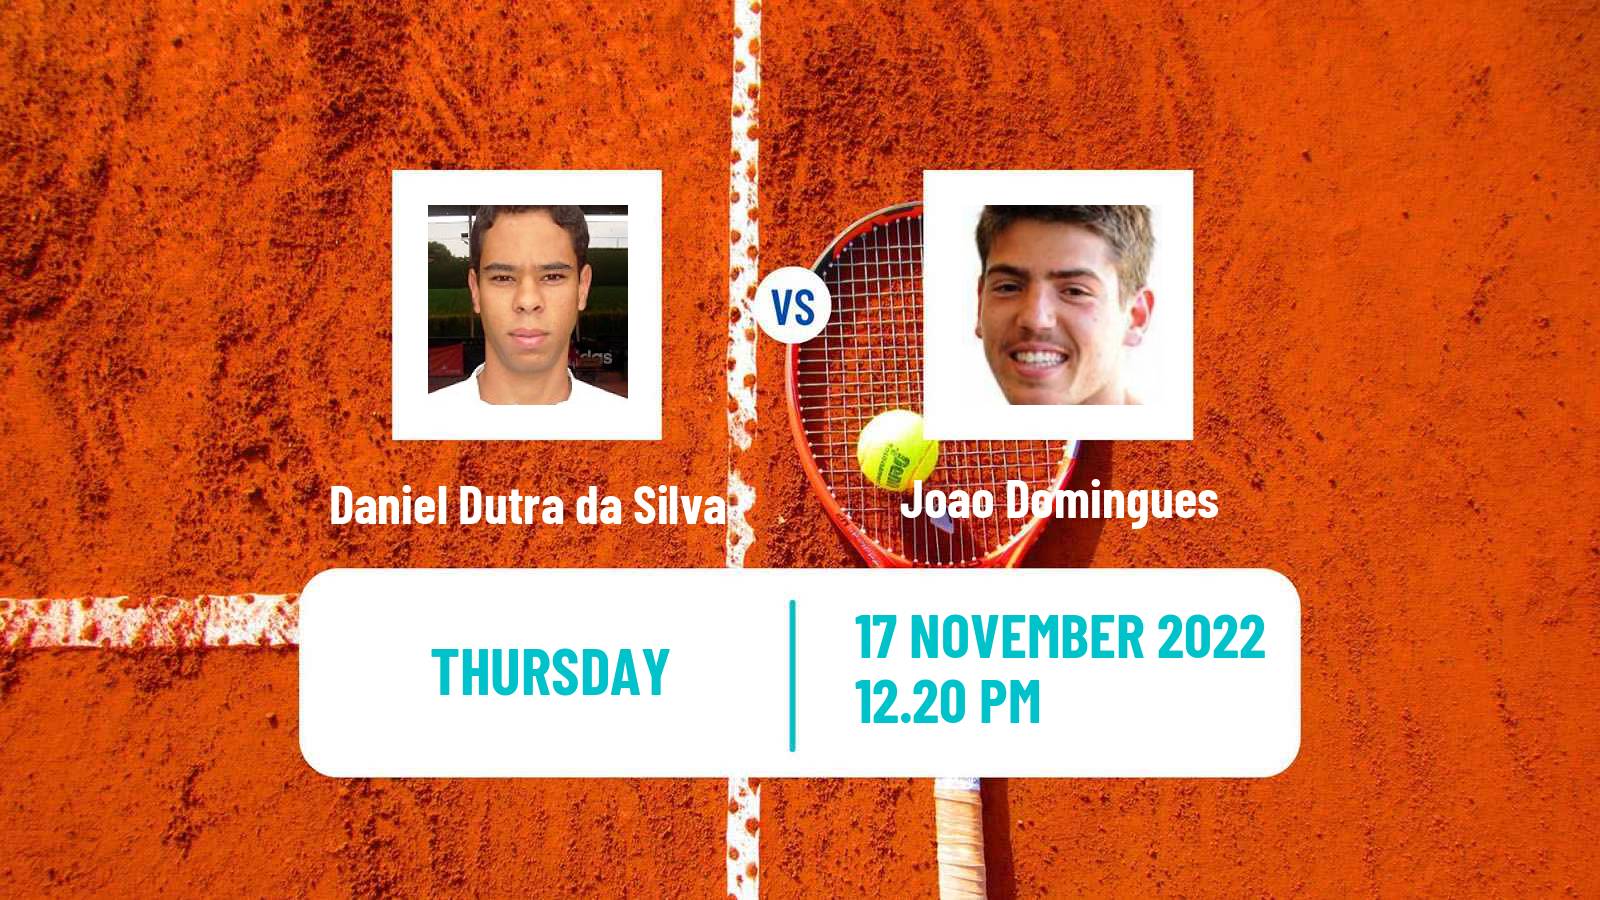 Tennis ATP Challenger Daniel Dutra da Silva - Joao Domingues